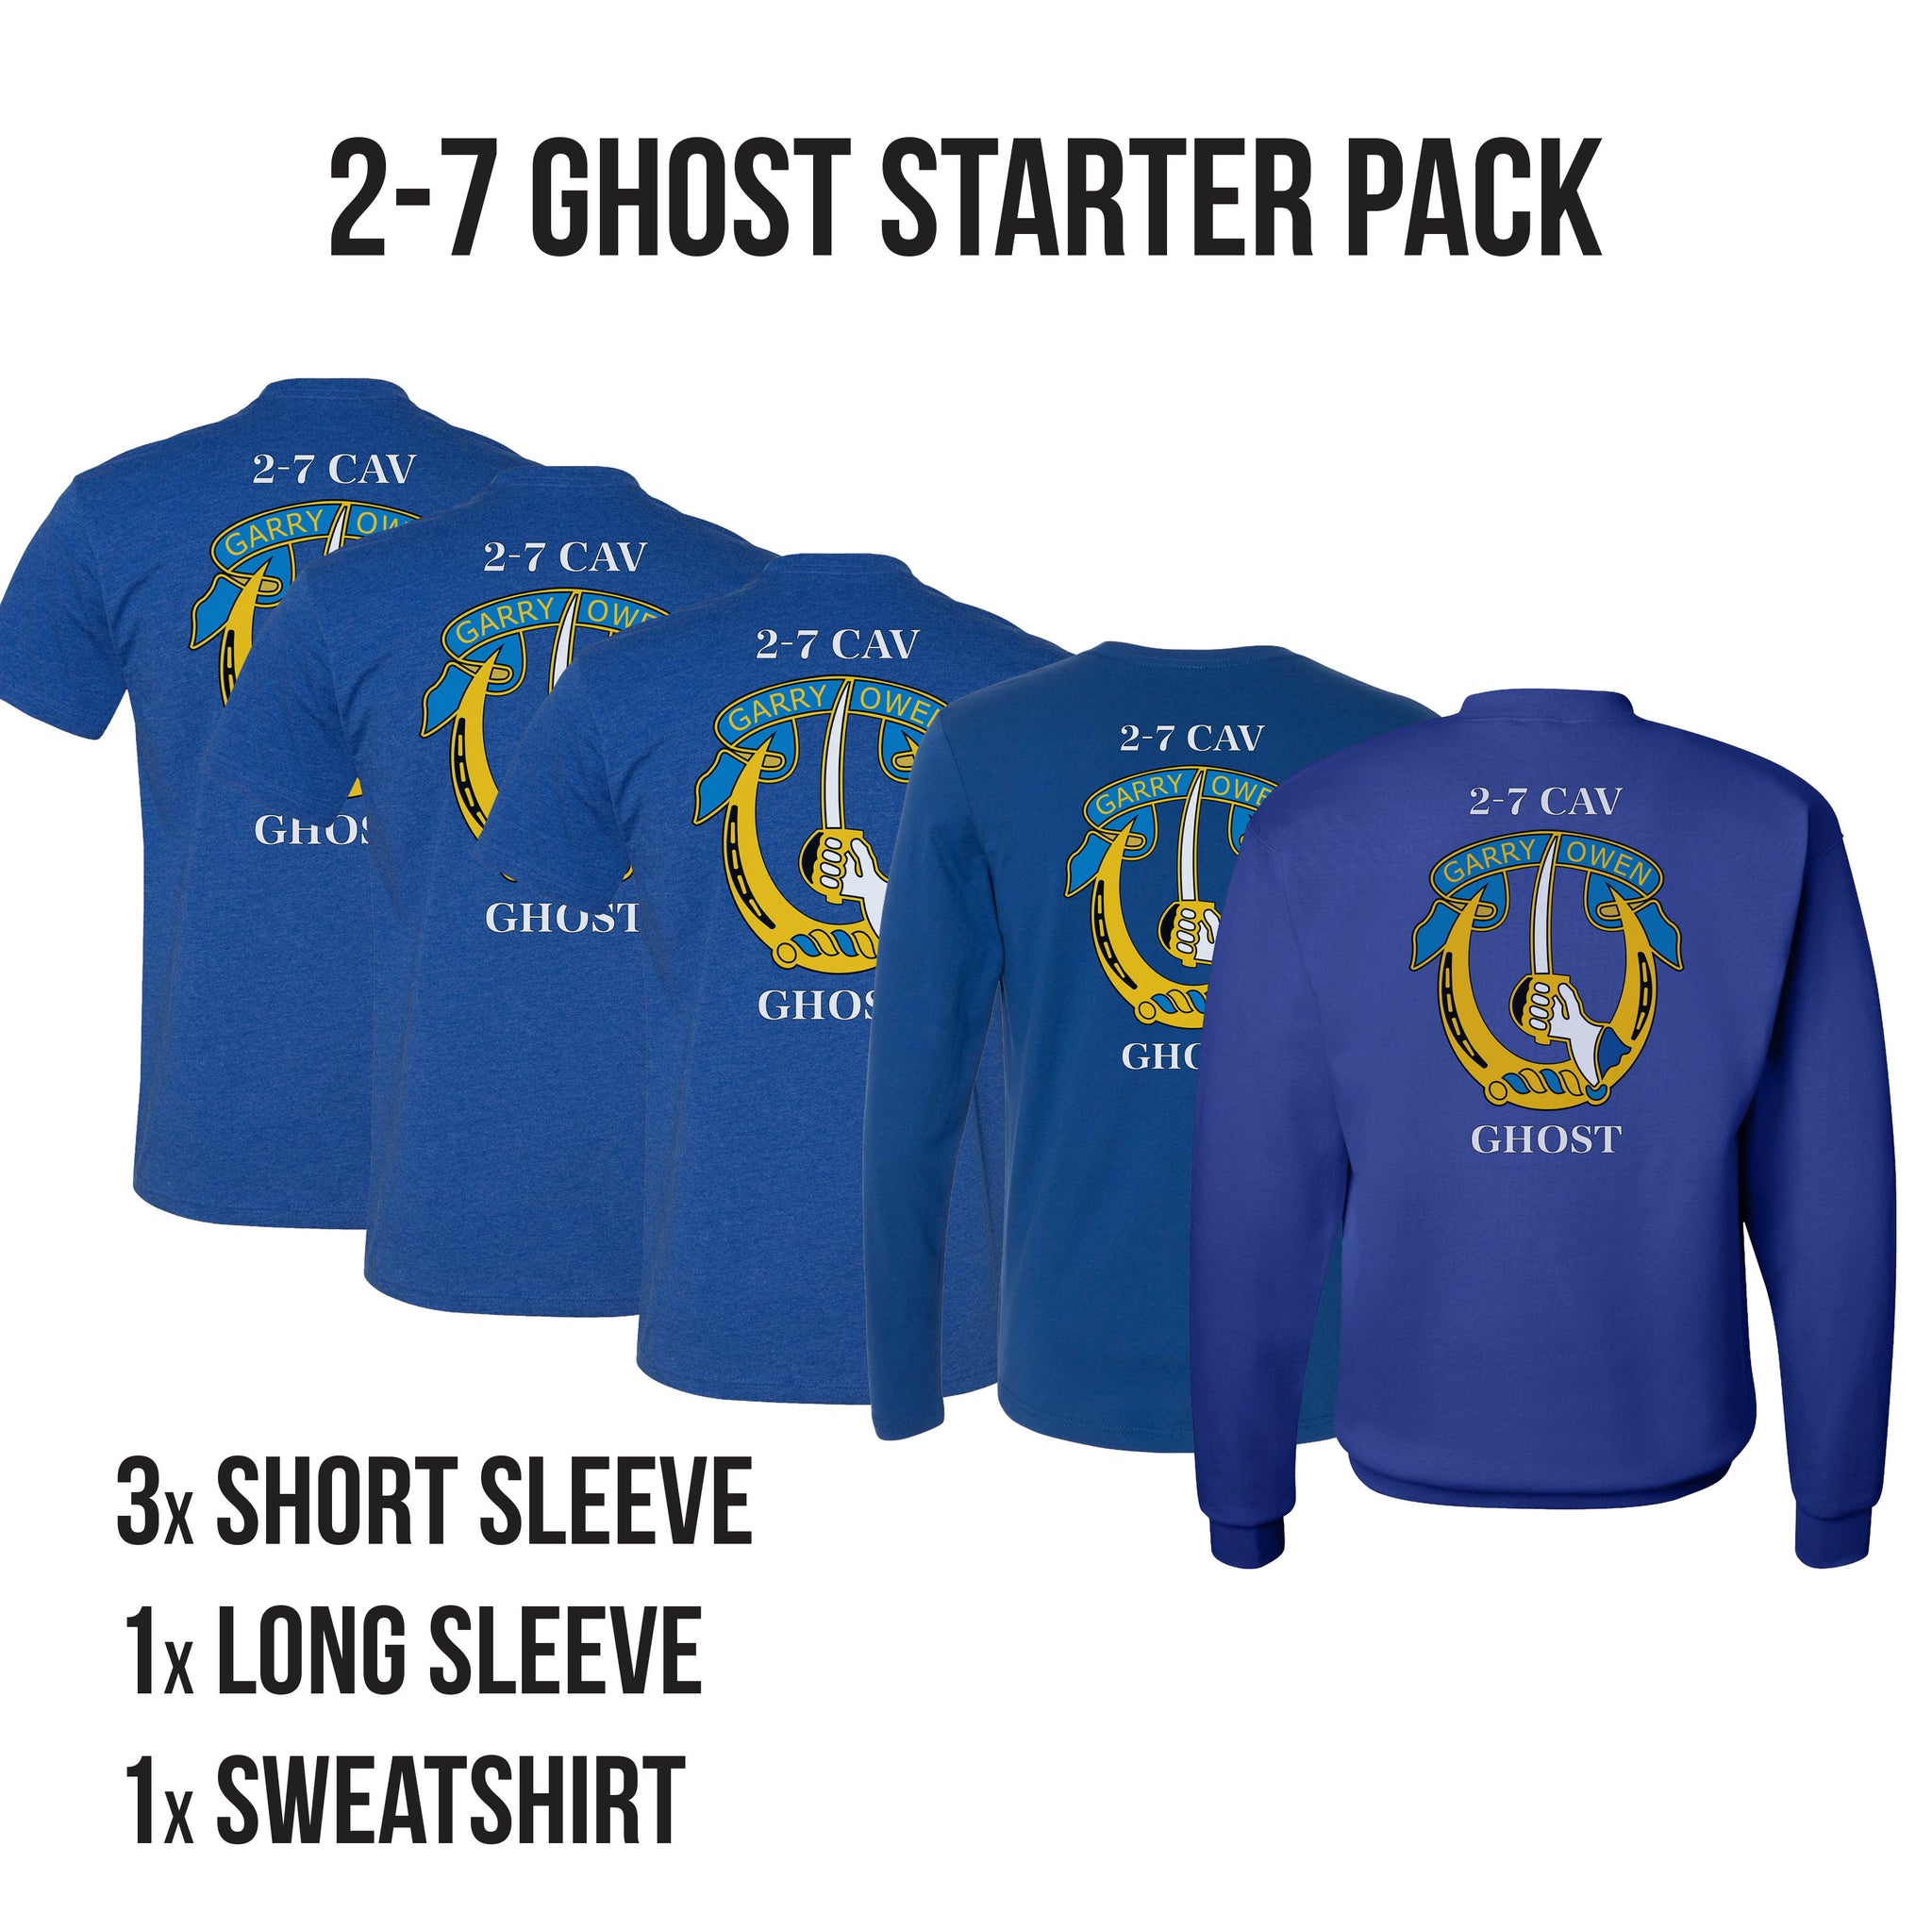 2-7 Ghost Starter Pack